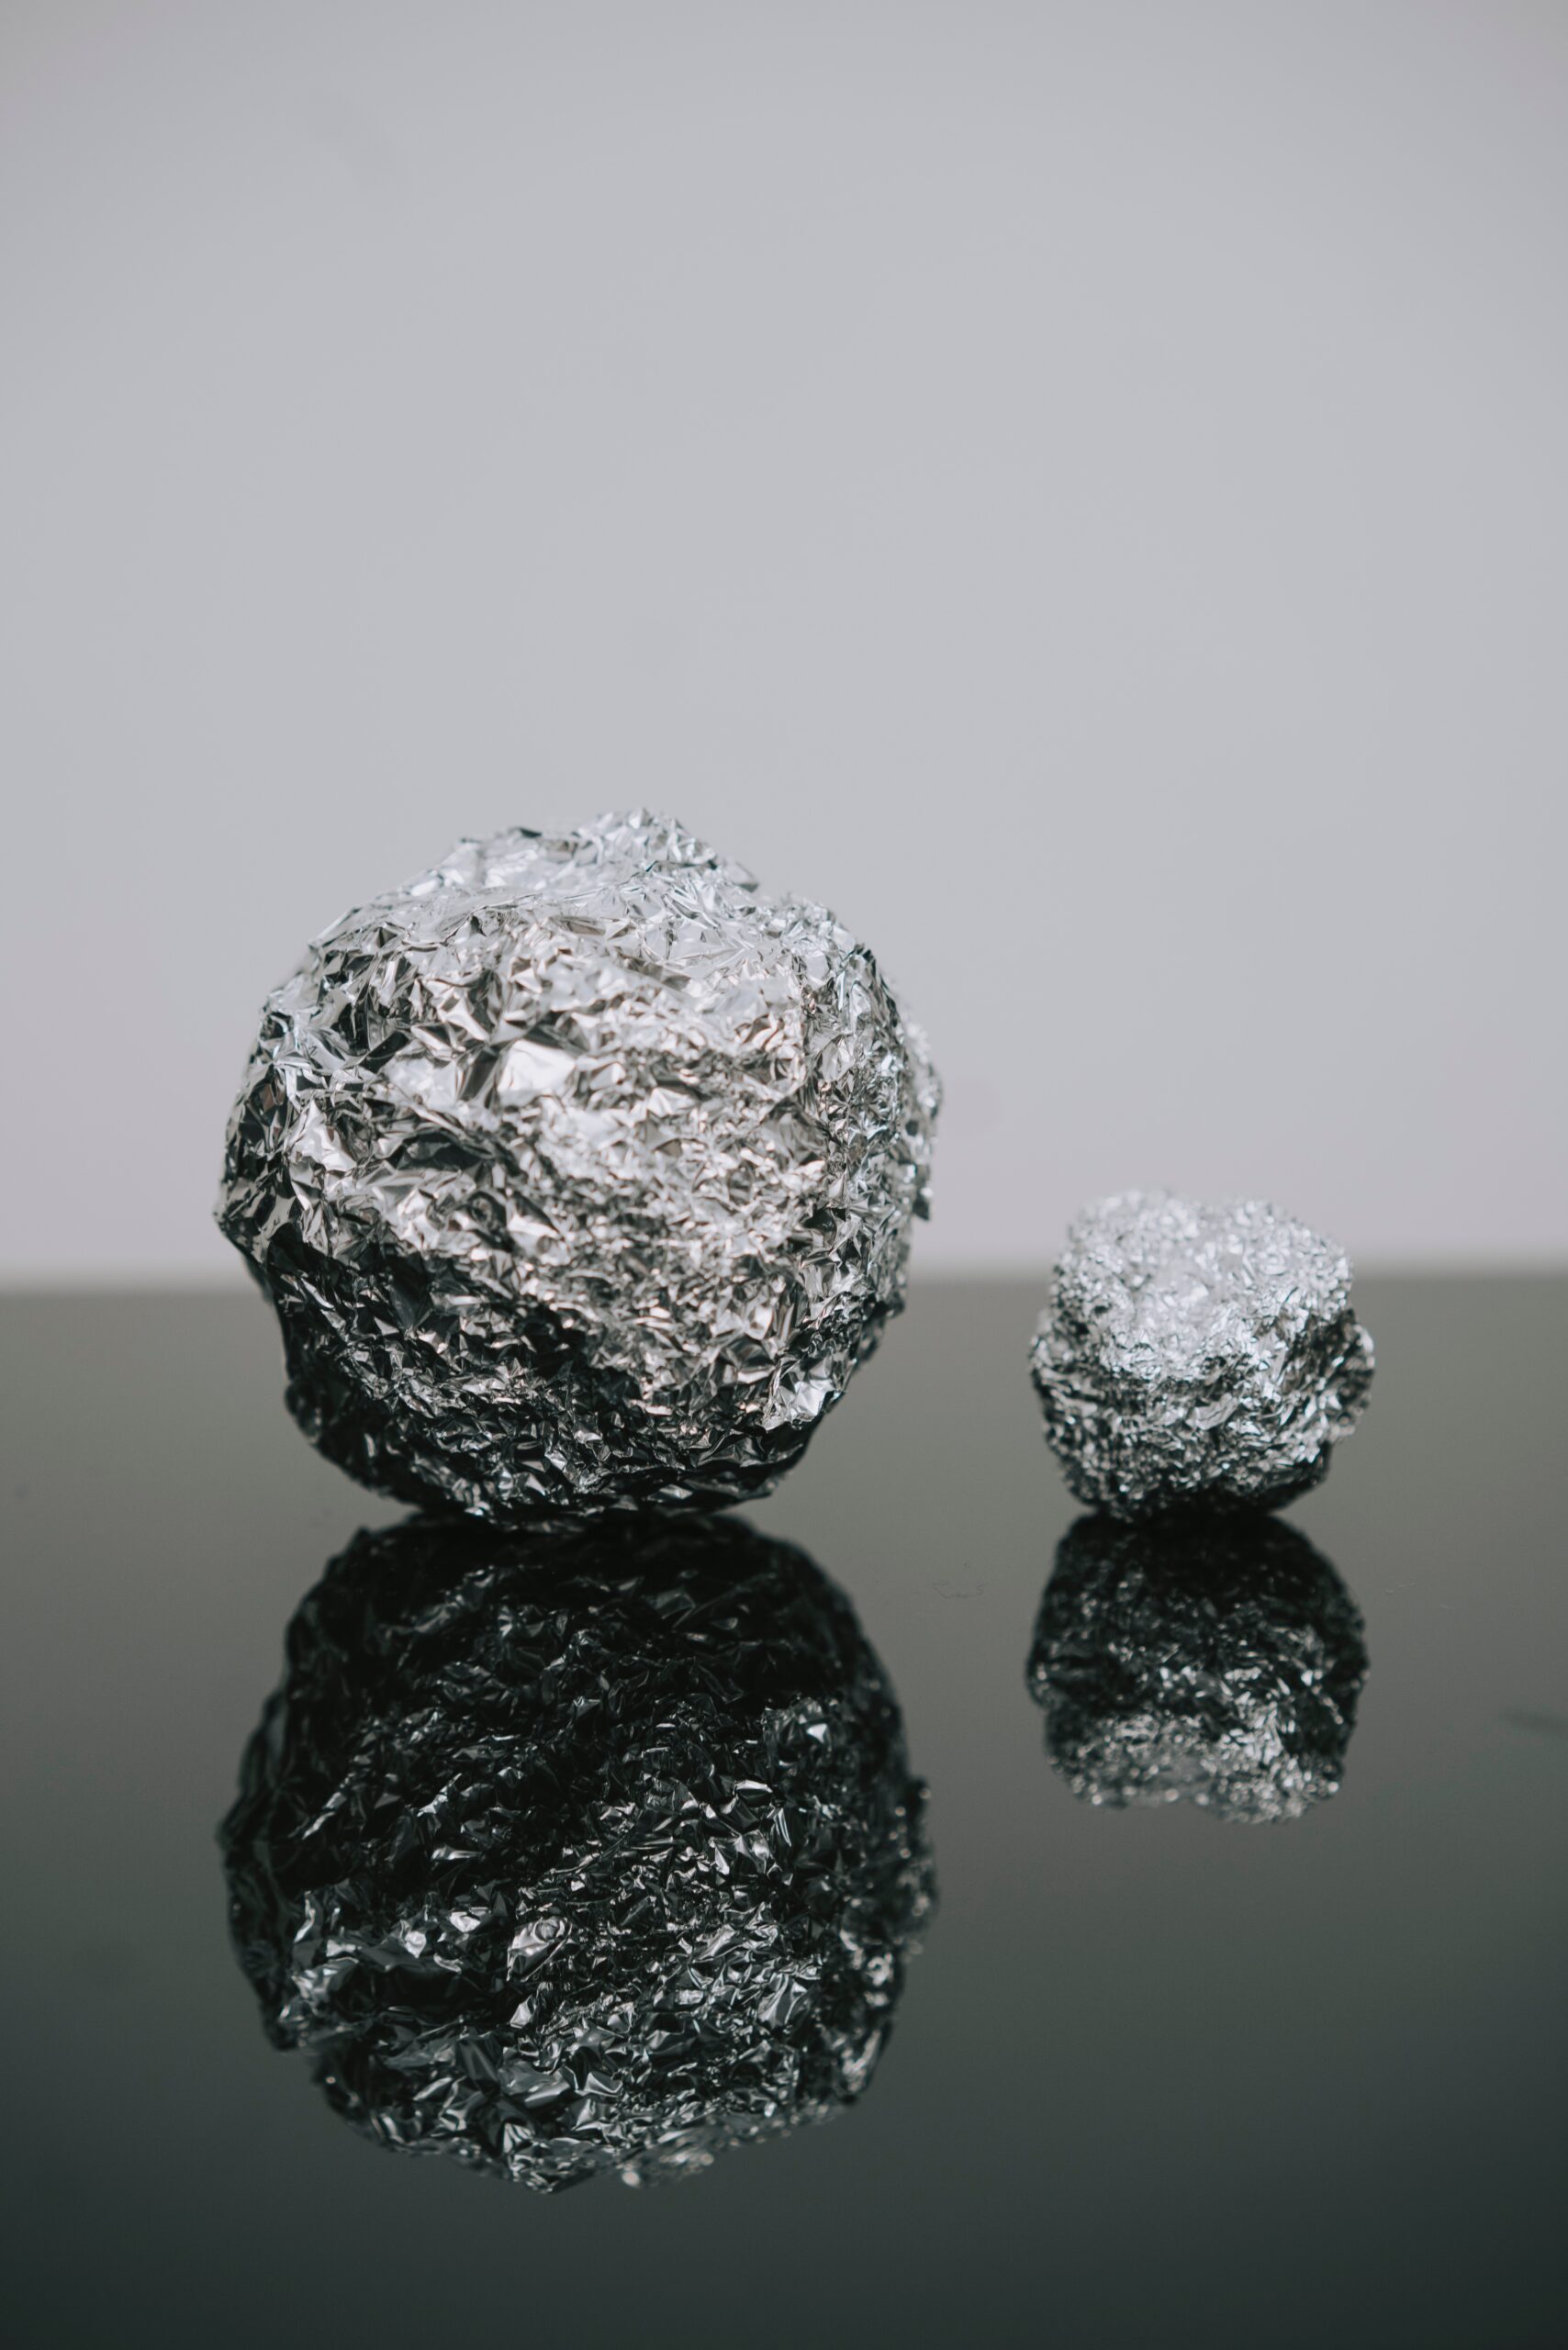 What is aluminum?